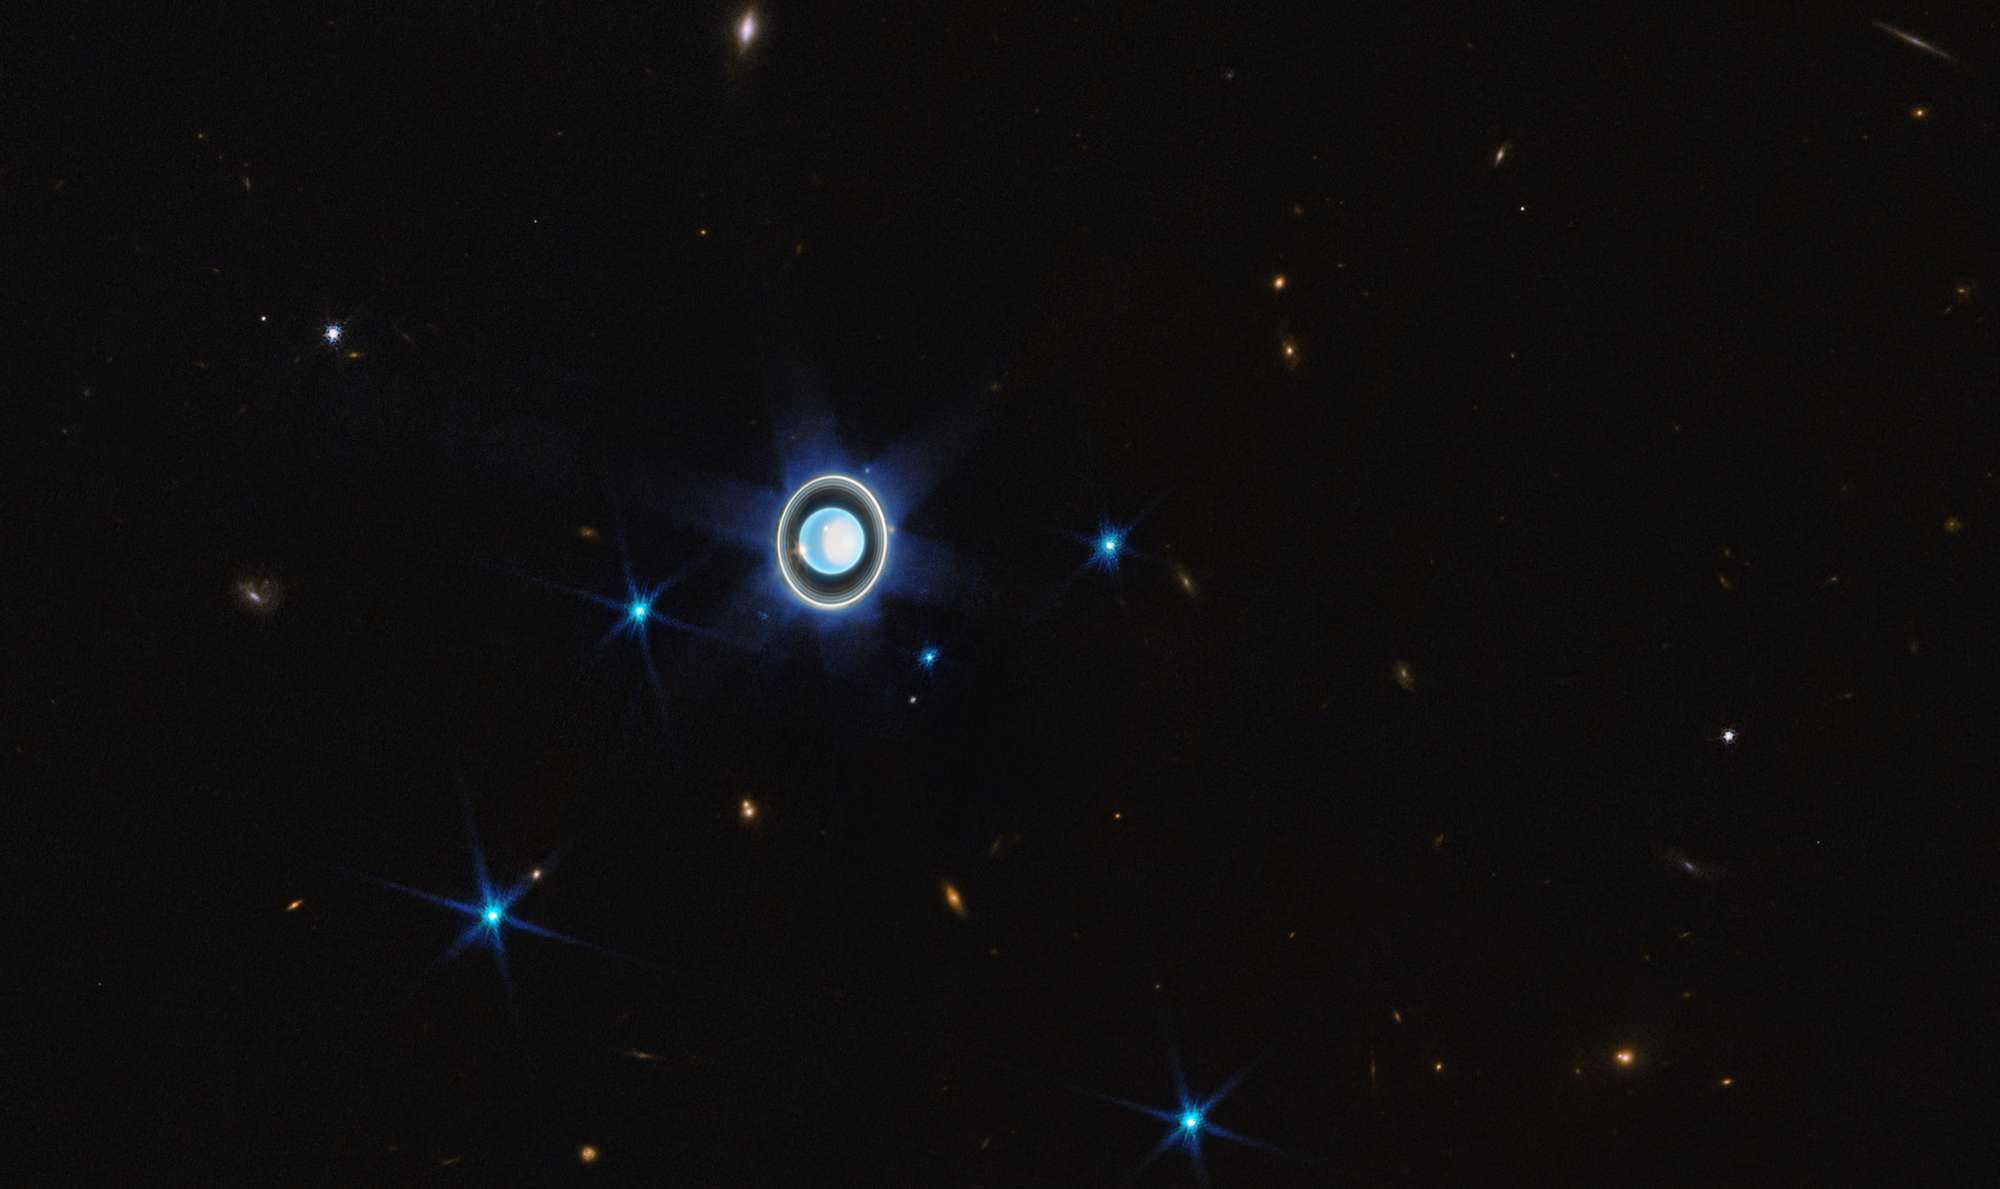 Em abril deste ano, o Telescópio Espacial James Webb obteve imagens impressionantes do planeta Urano. Sétimo planeta a partir do Sol, Urano é singular: ele gira de lado, em um ângulo de aproximadamente 90 graus em relação ao plano de sua órbita. Isto provoca estações climáticas extremas, uma vez que os pólos do planeta experimentam muitos anos de luz solar constante, seguidos por um número igual de anos de escuridão completa. Urano tem 13 anéis conhecidos e 11 deles estão visíveis na imagem, assim como muitas de suas 27 luas conhecidas